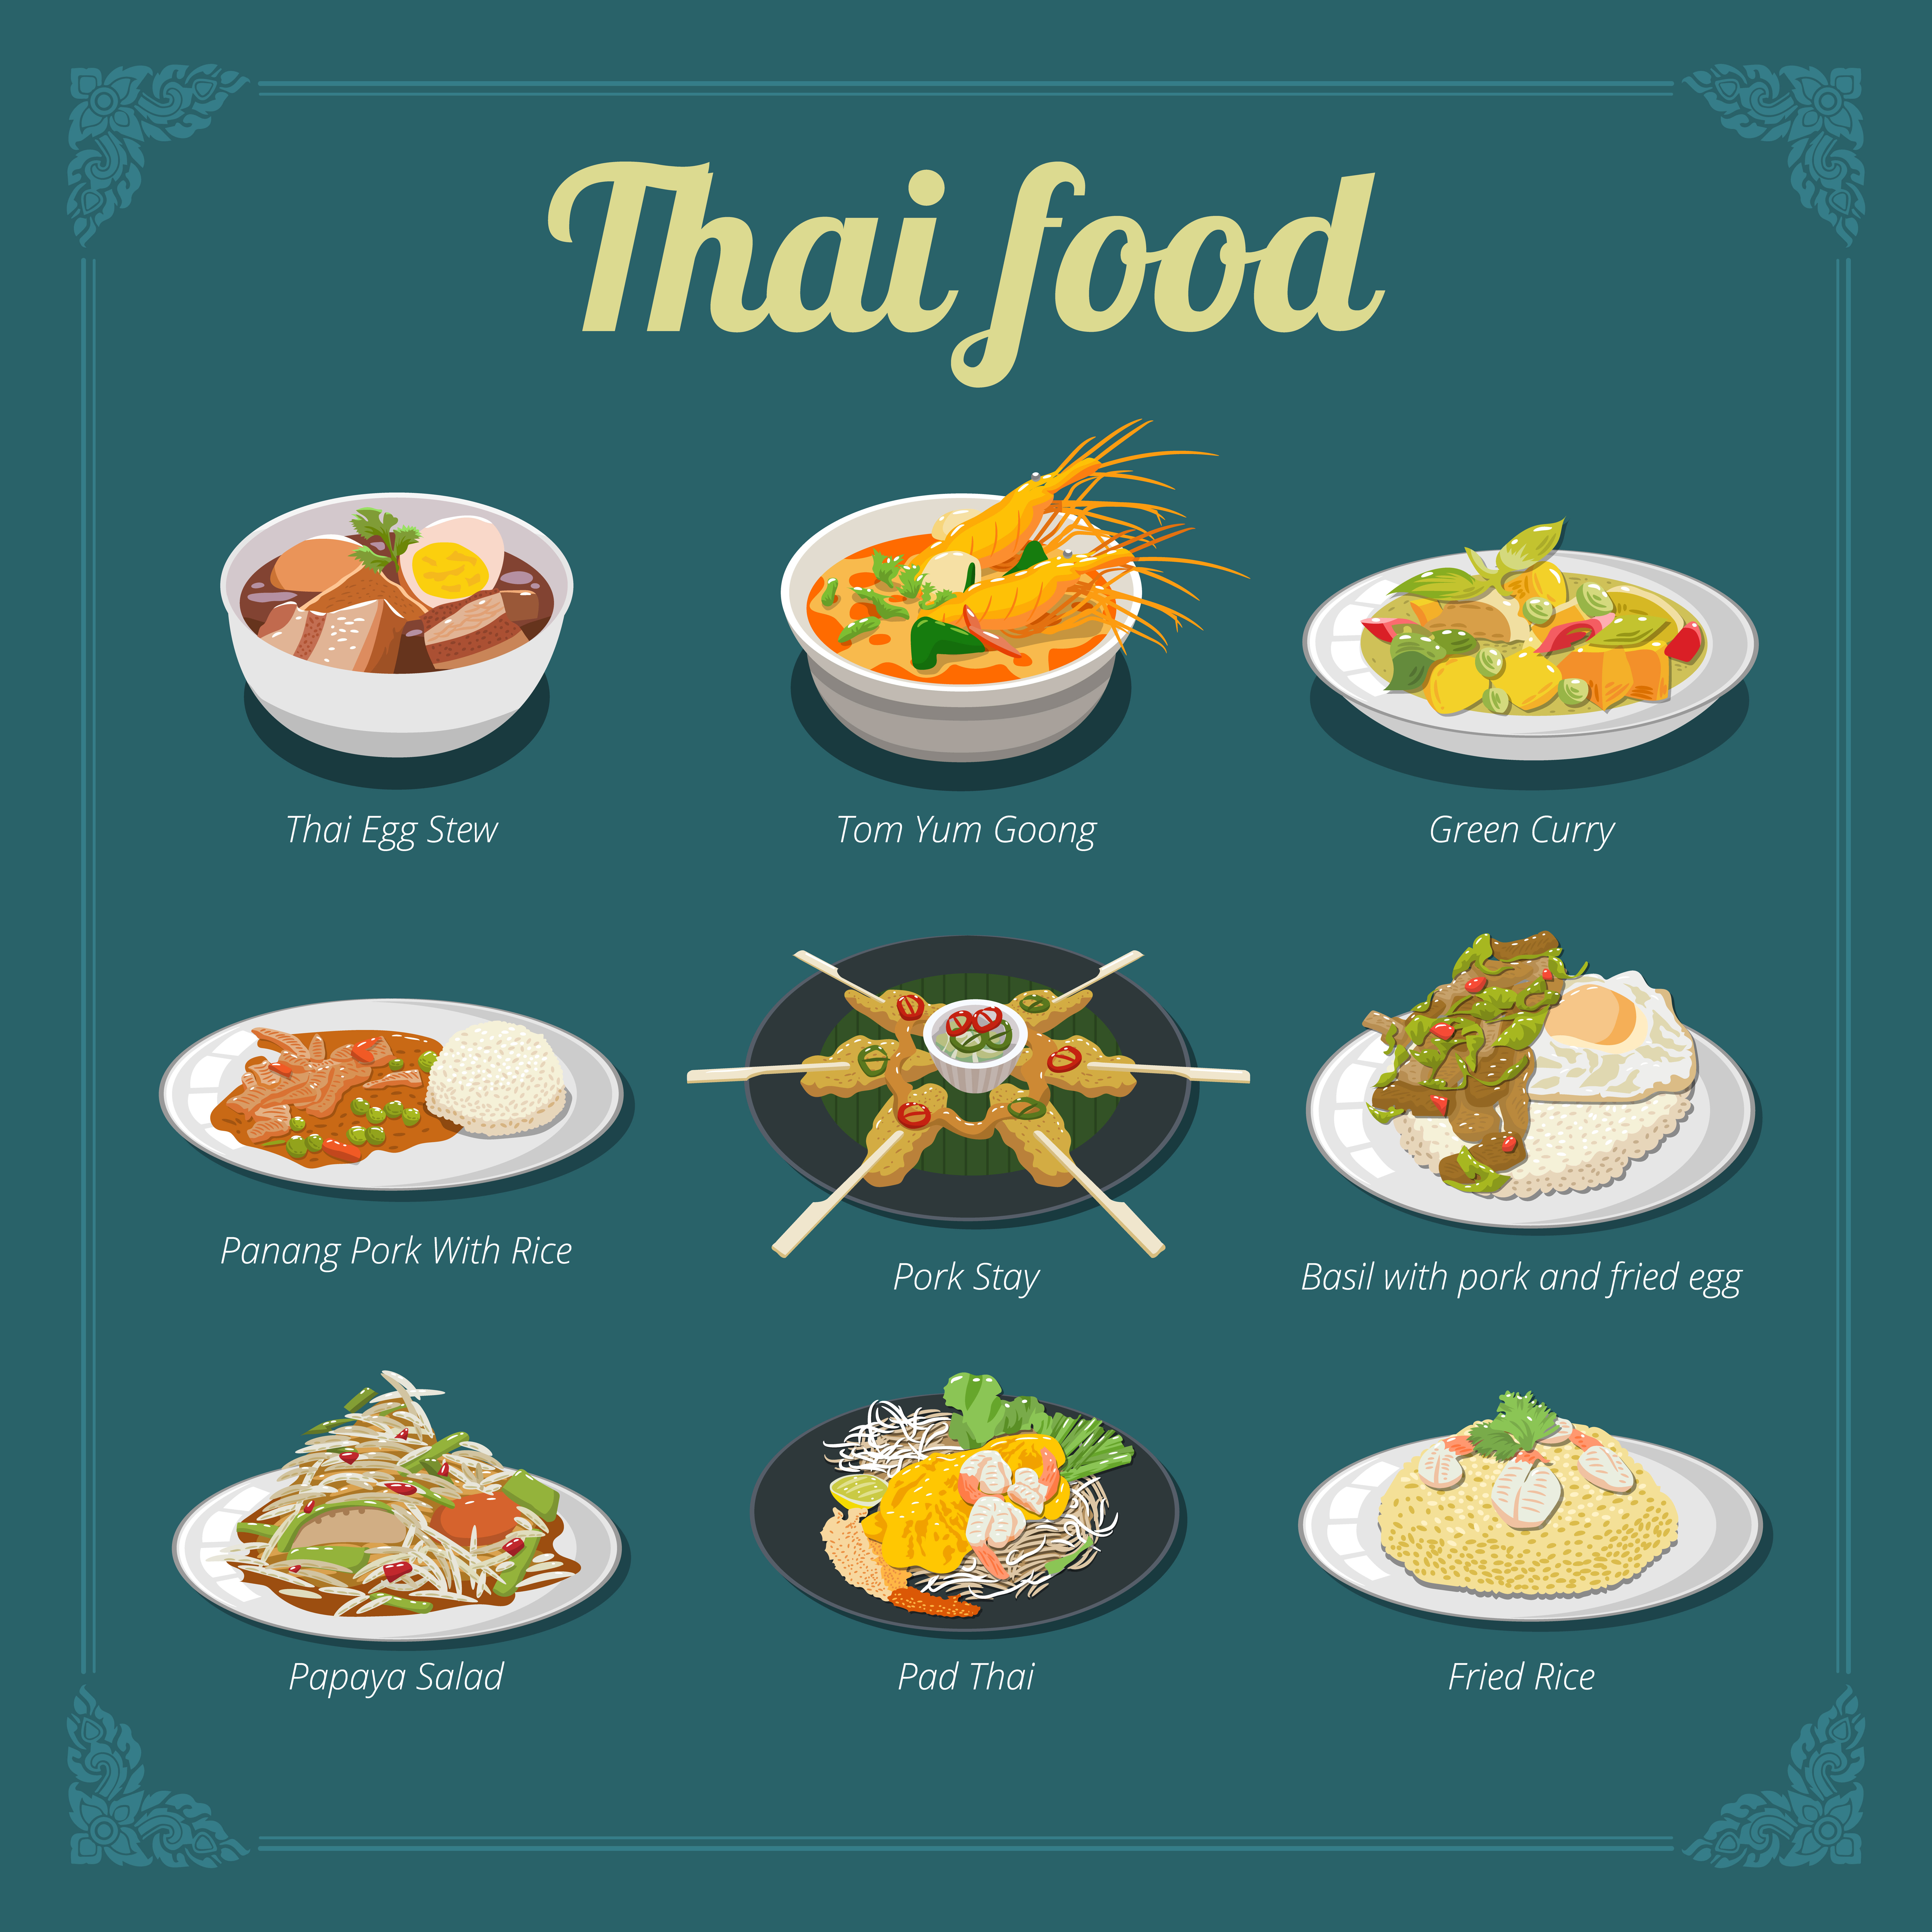 Thai Food Menu Design Download Free Vectors Clipart Graphics Vector Art,Hot Tottie Usher